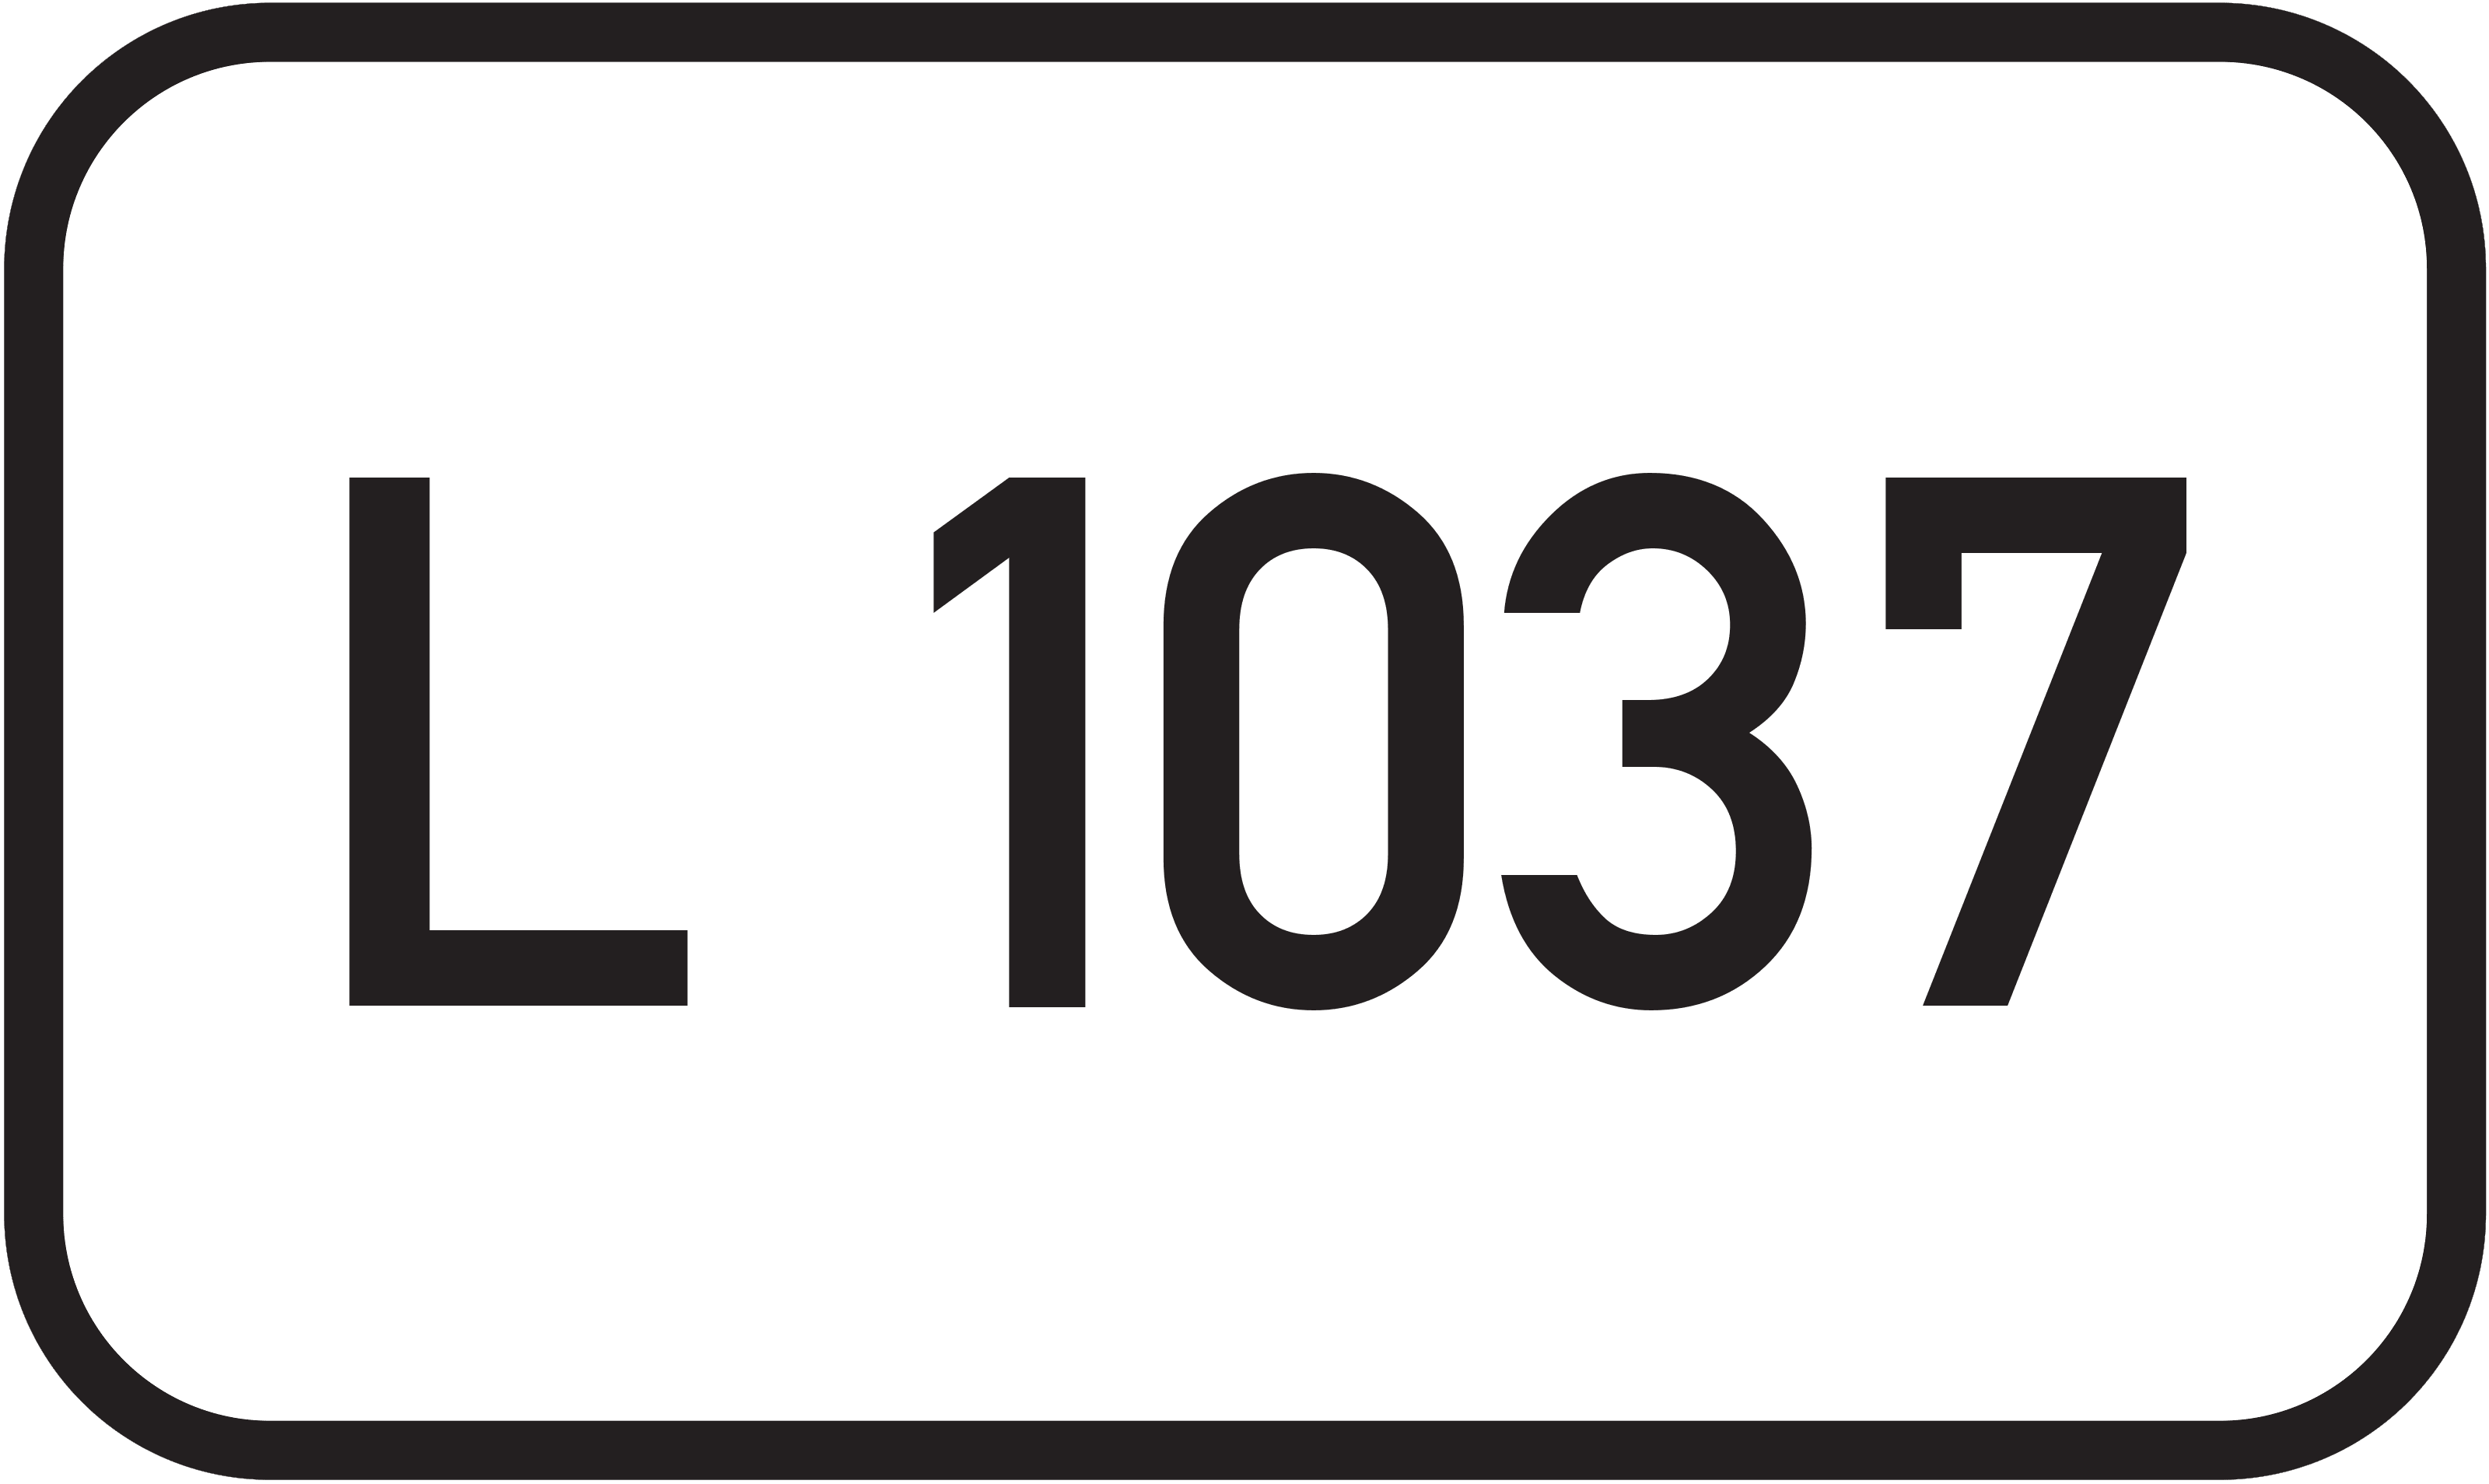 Landesstraße L 1037